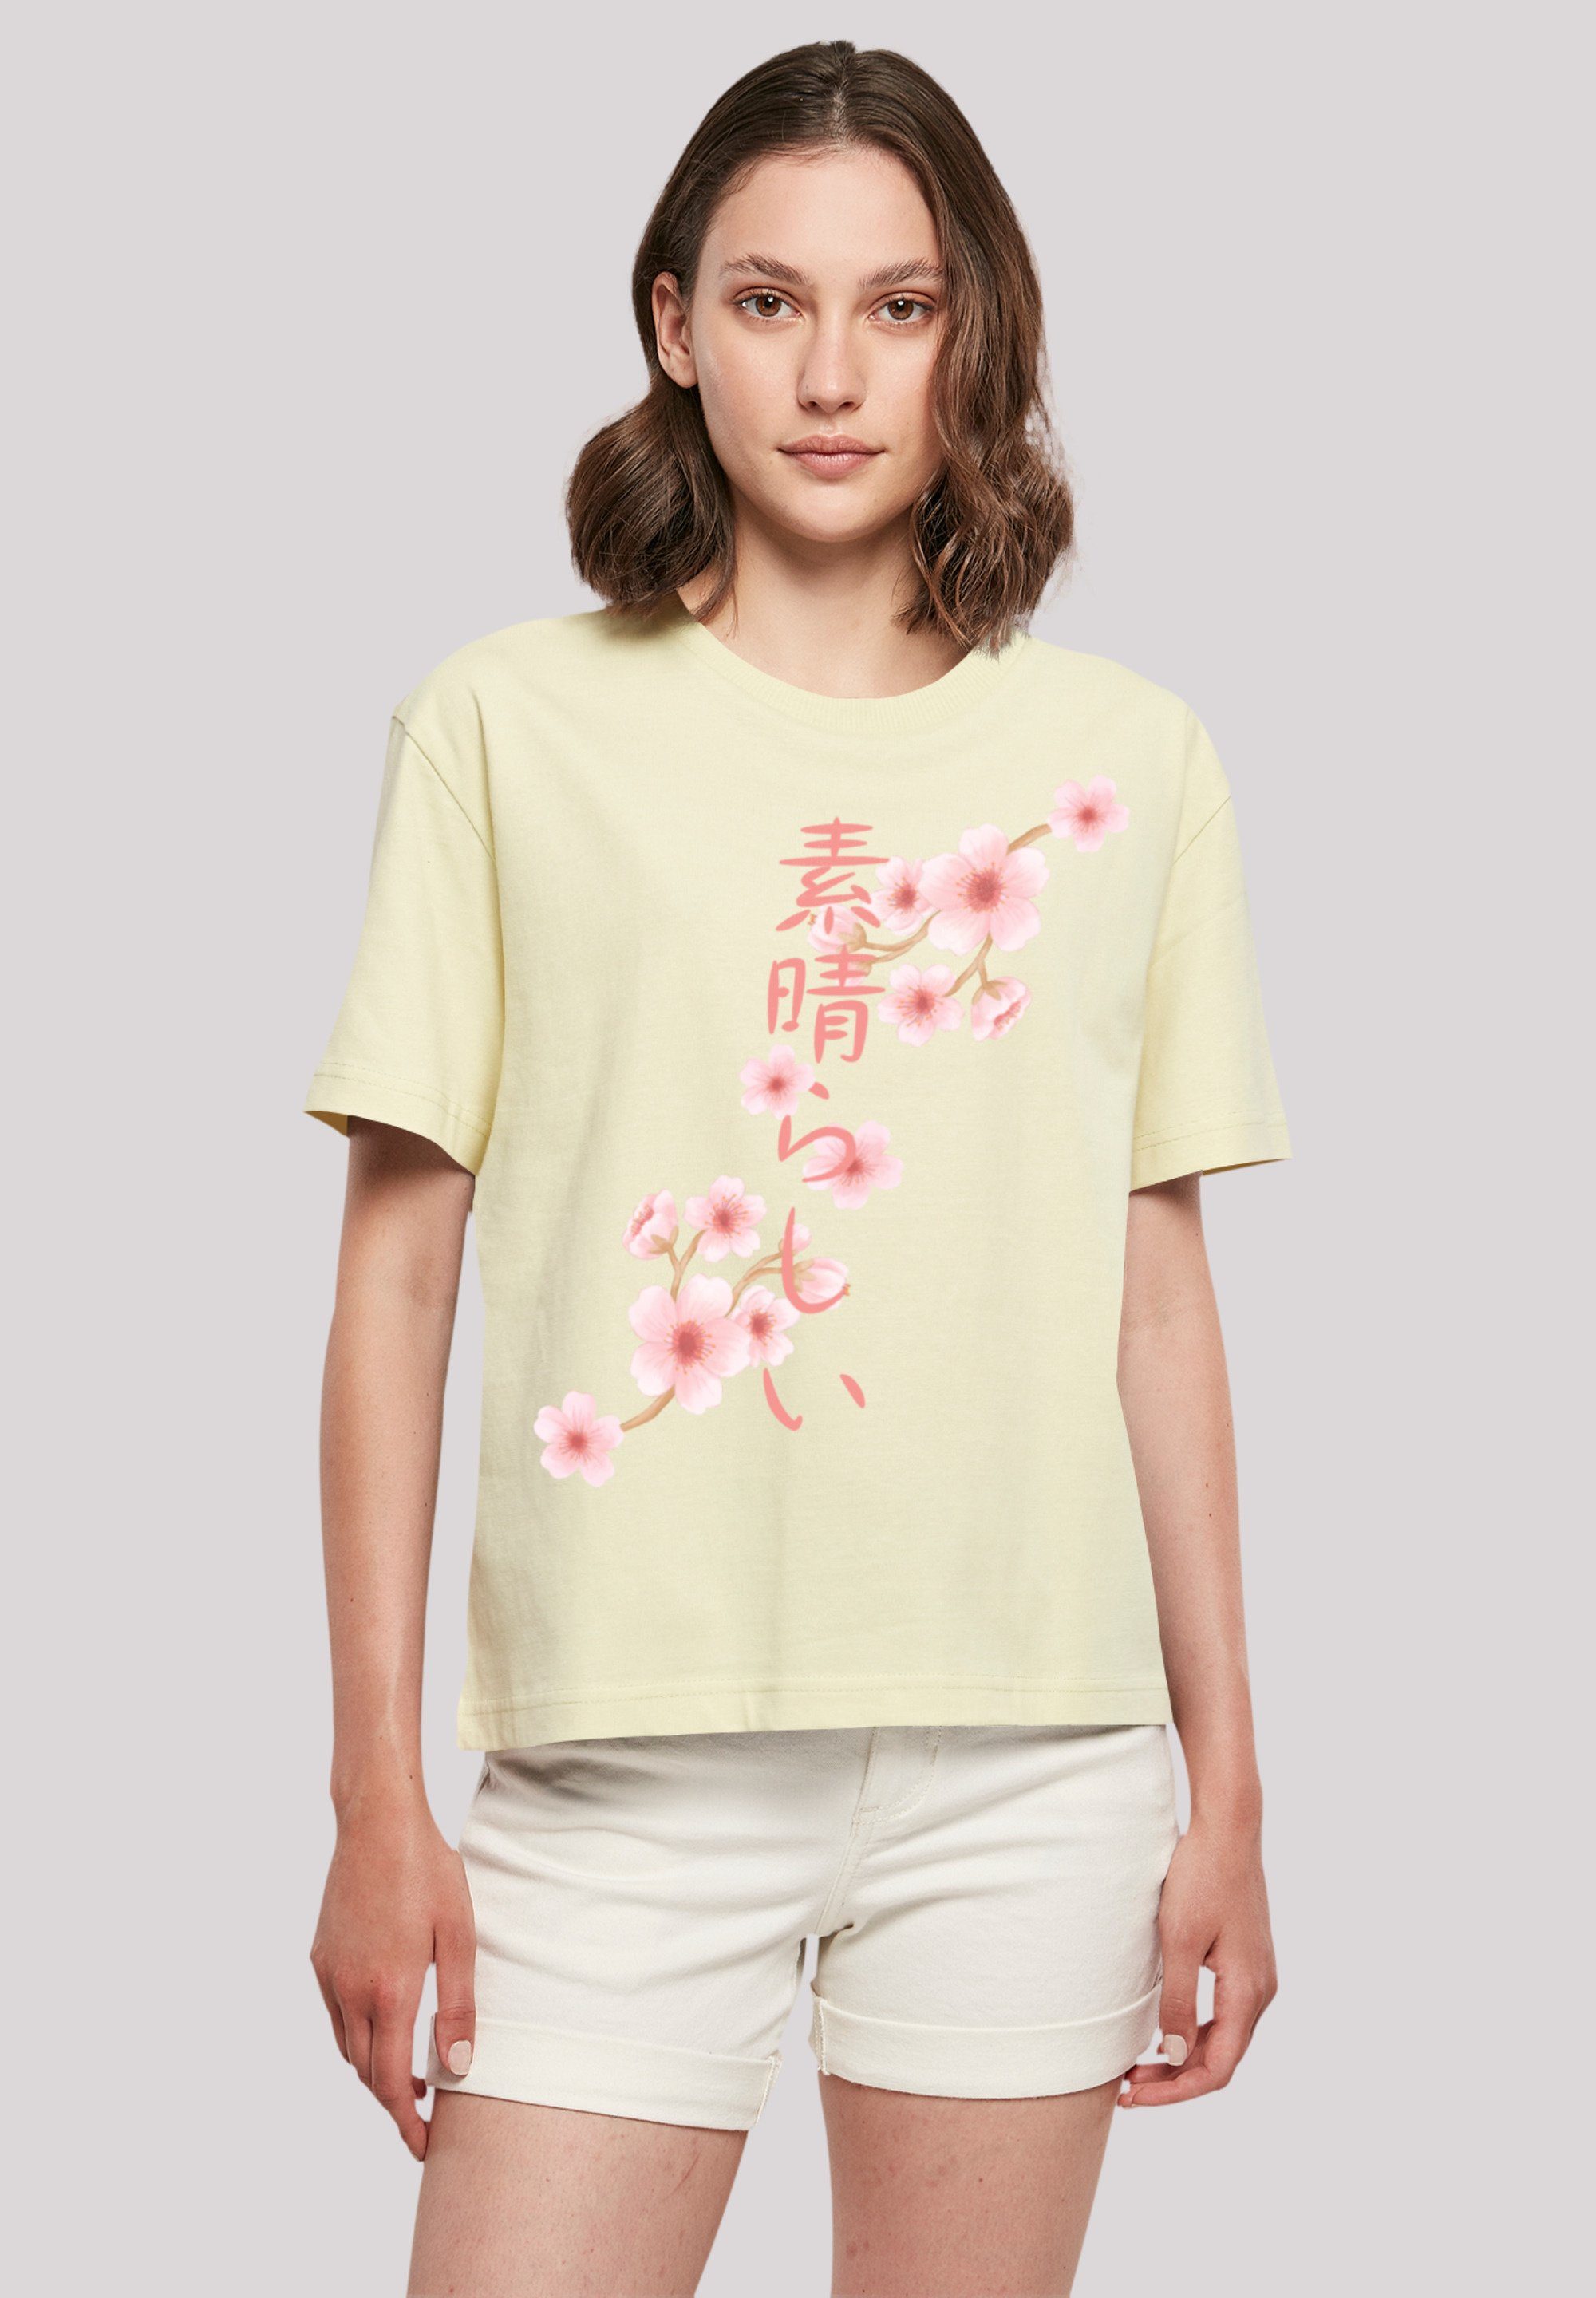 F4NT4STIC T-Shirt Kirschblüten Print, Gerippter Rundhalsausschnitt für  stylischen Look